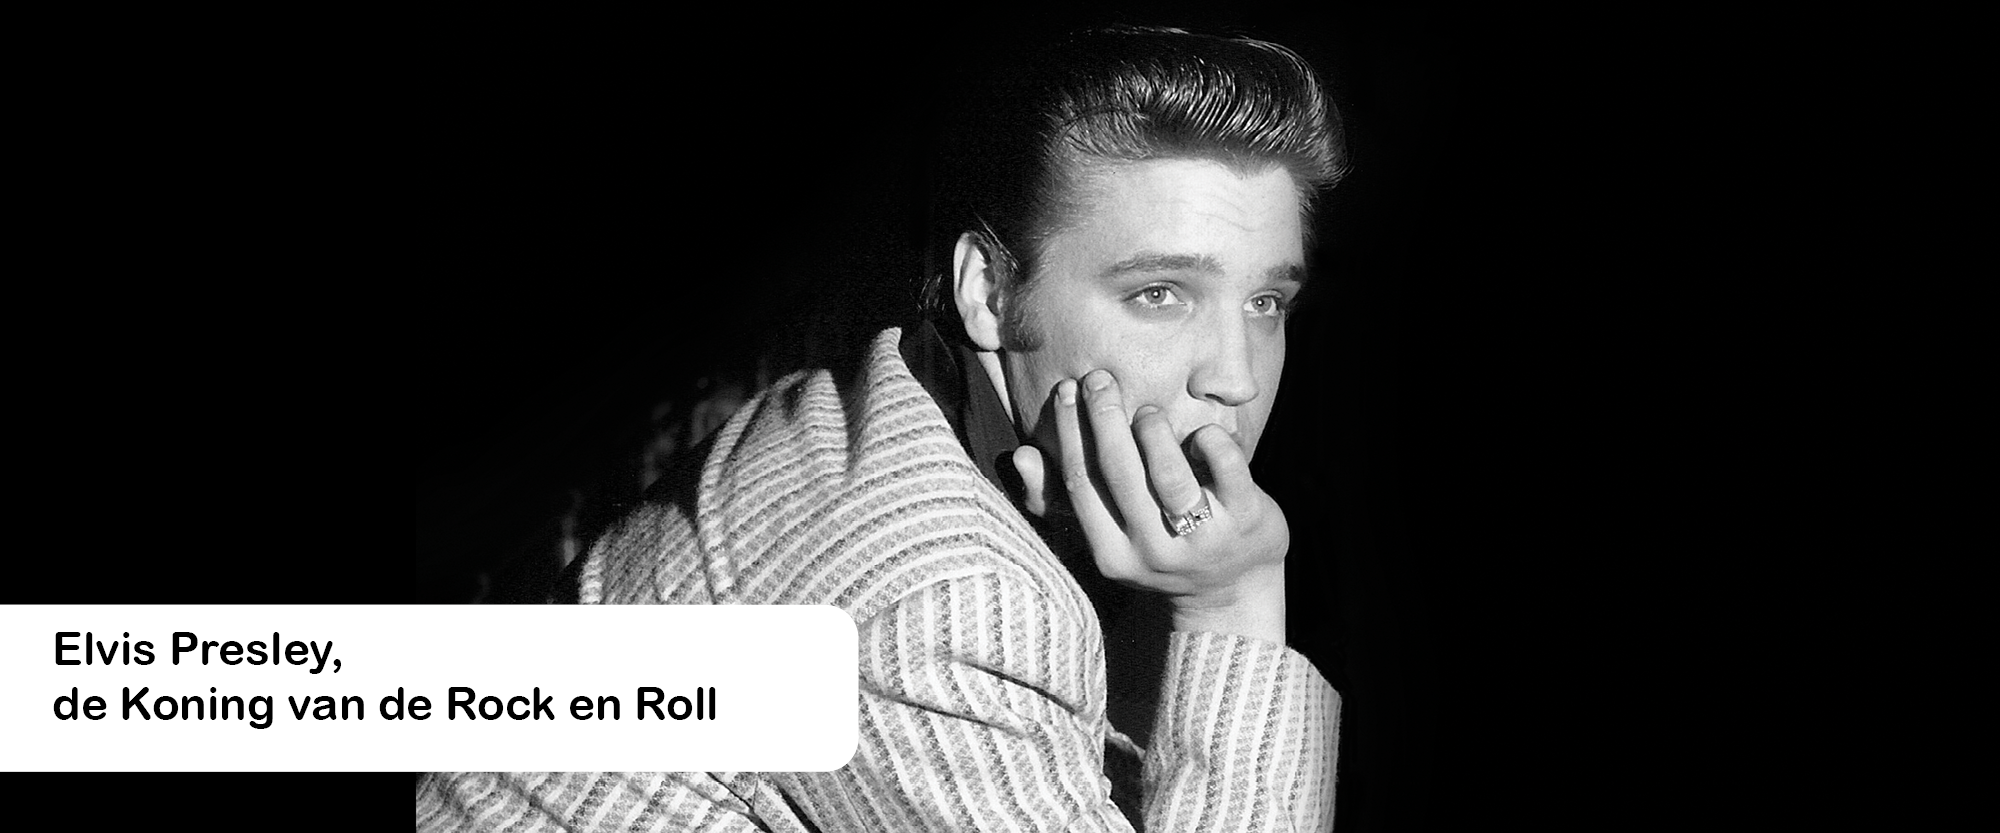 Elvis Presley, de Koning van de Rock en Roll